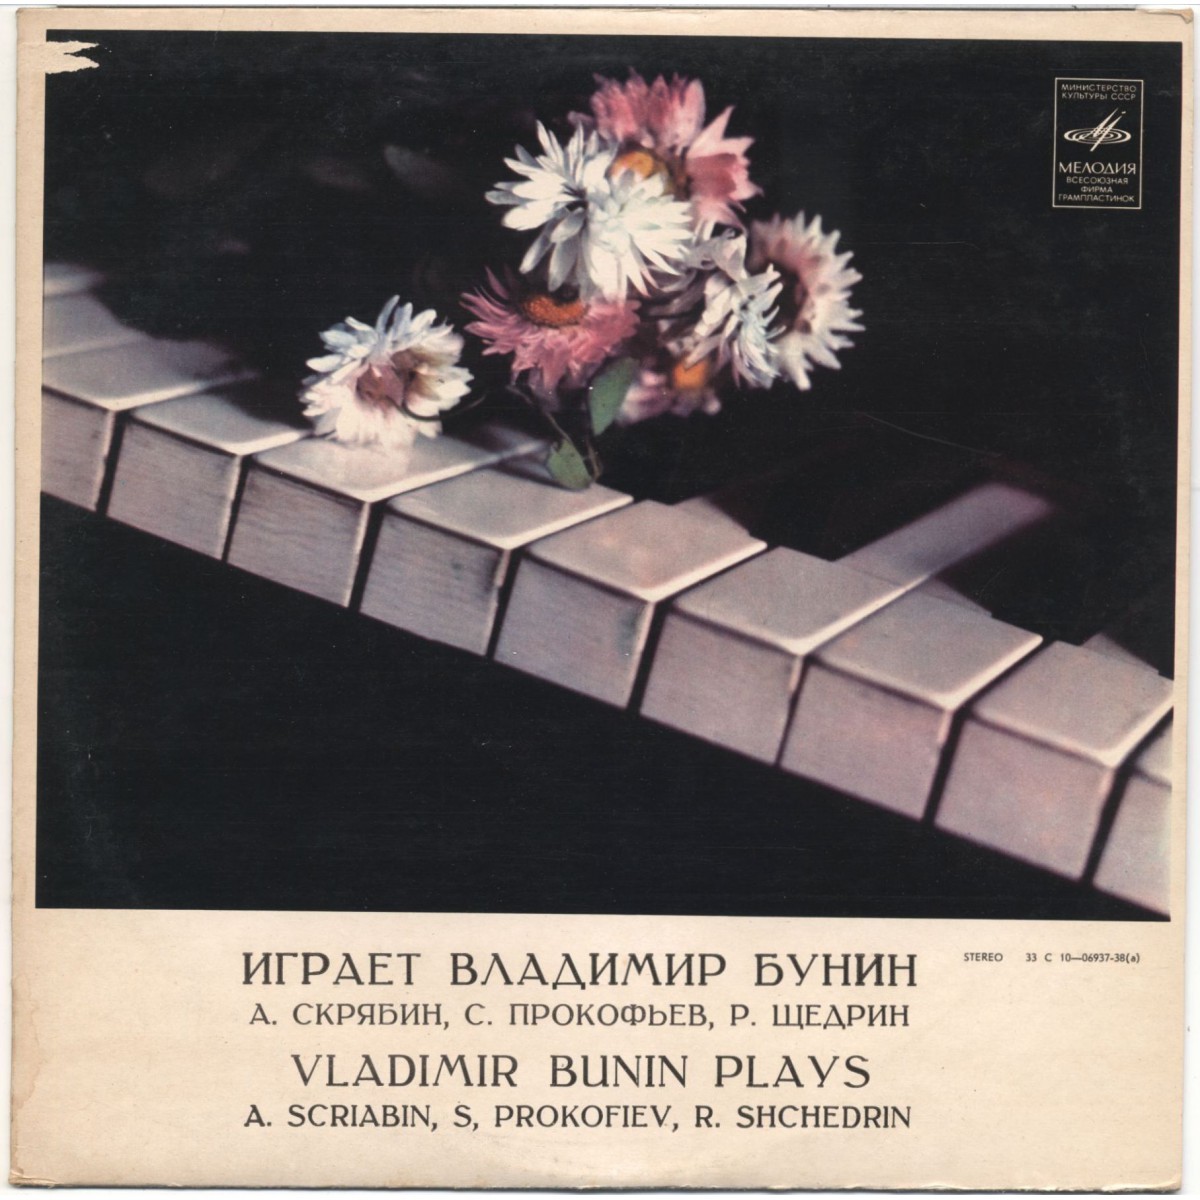 БУНИН Владимир, фортепиано